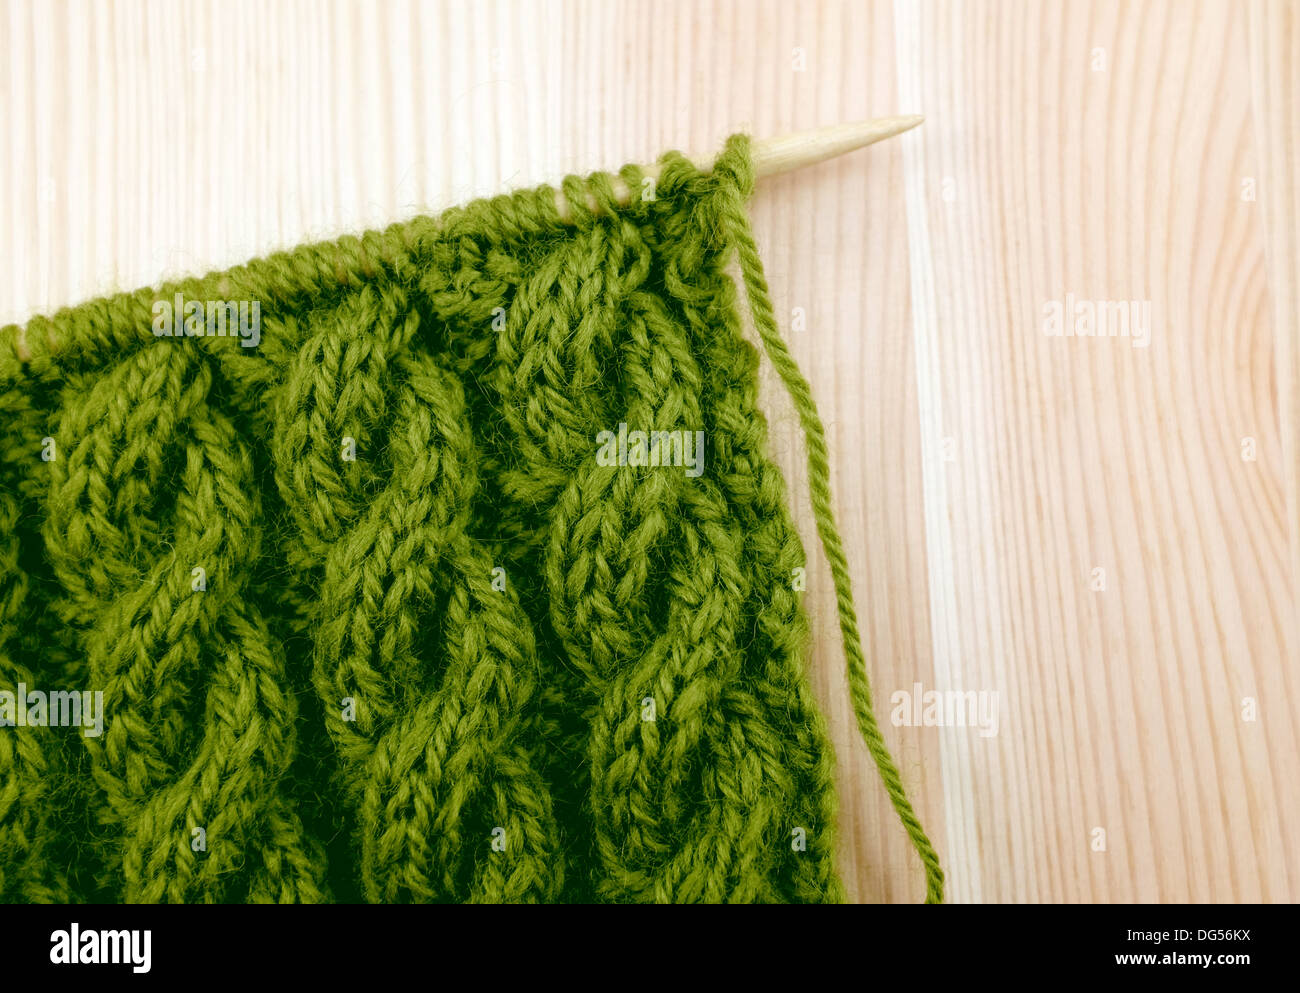 Grün gewickelt Seil Kabel stricken Masche auf der Nadel, auf einem hölzernen Hintergrund Stockfoto